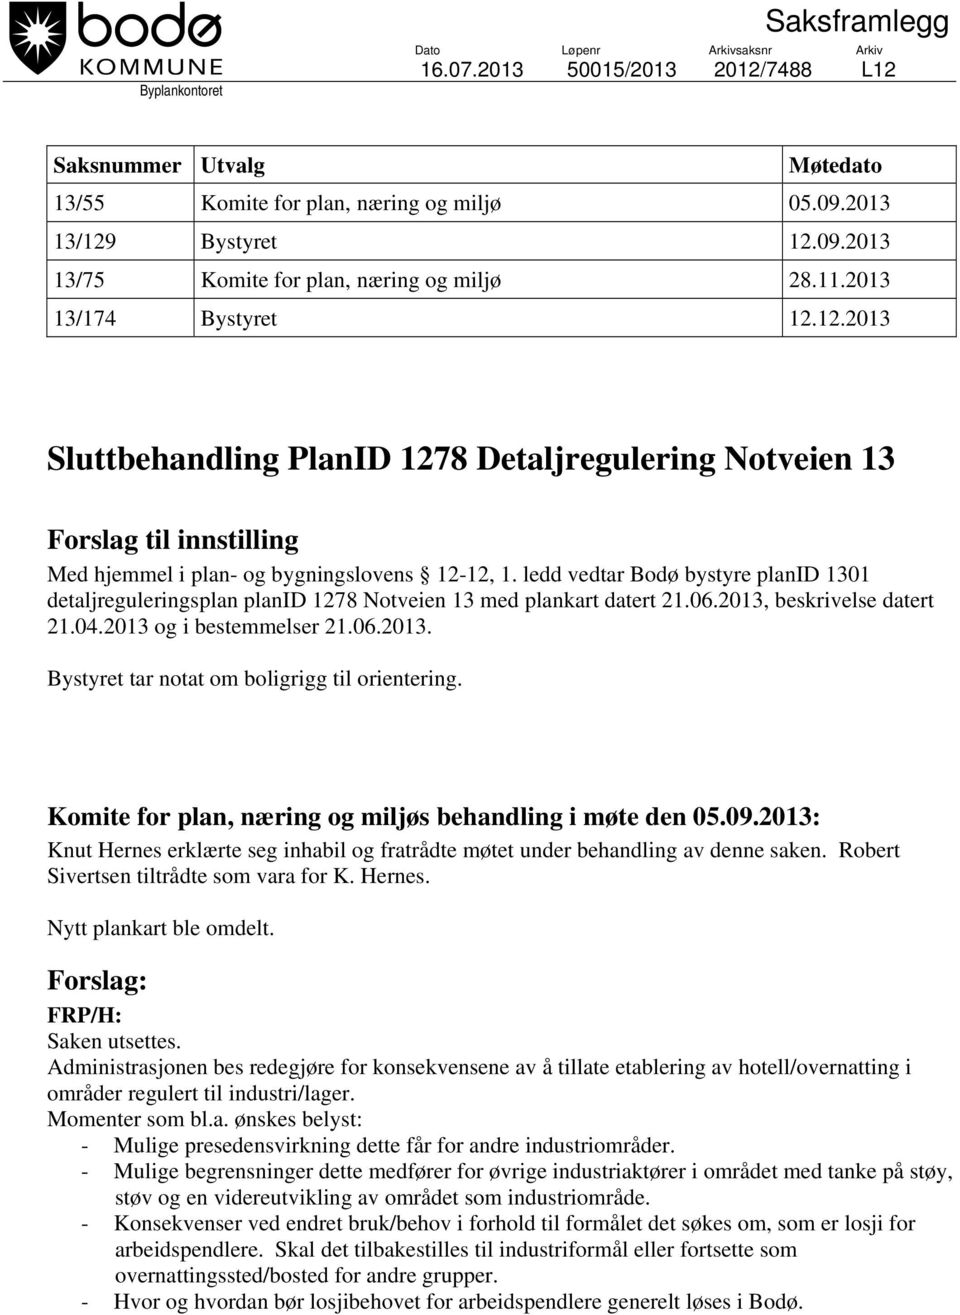 ledd vedtar Bodø bystyre planid 1301 detaljreguleringsplan planid 1278 Notveien 13 med plankart datert 21.06.2013, beskrivelse datert 21.04.2013 og i bestemmelser 21.06.2013. Bystyret tar notat om boligrigg til orientering.